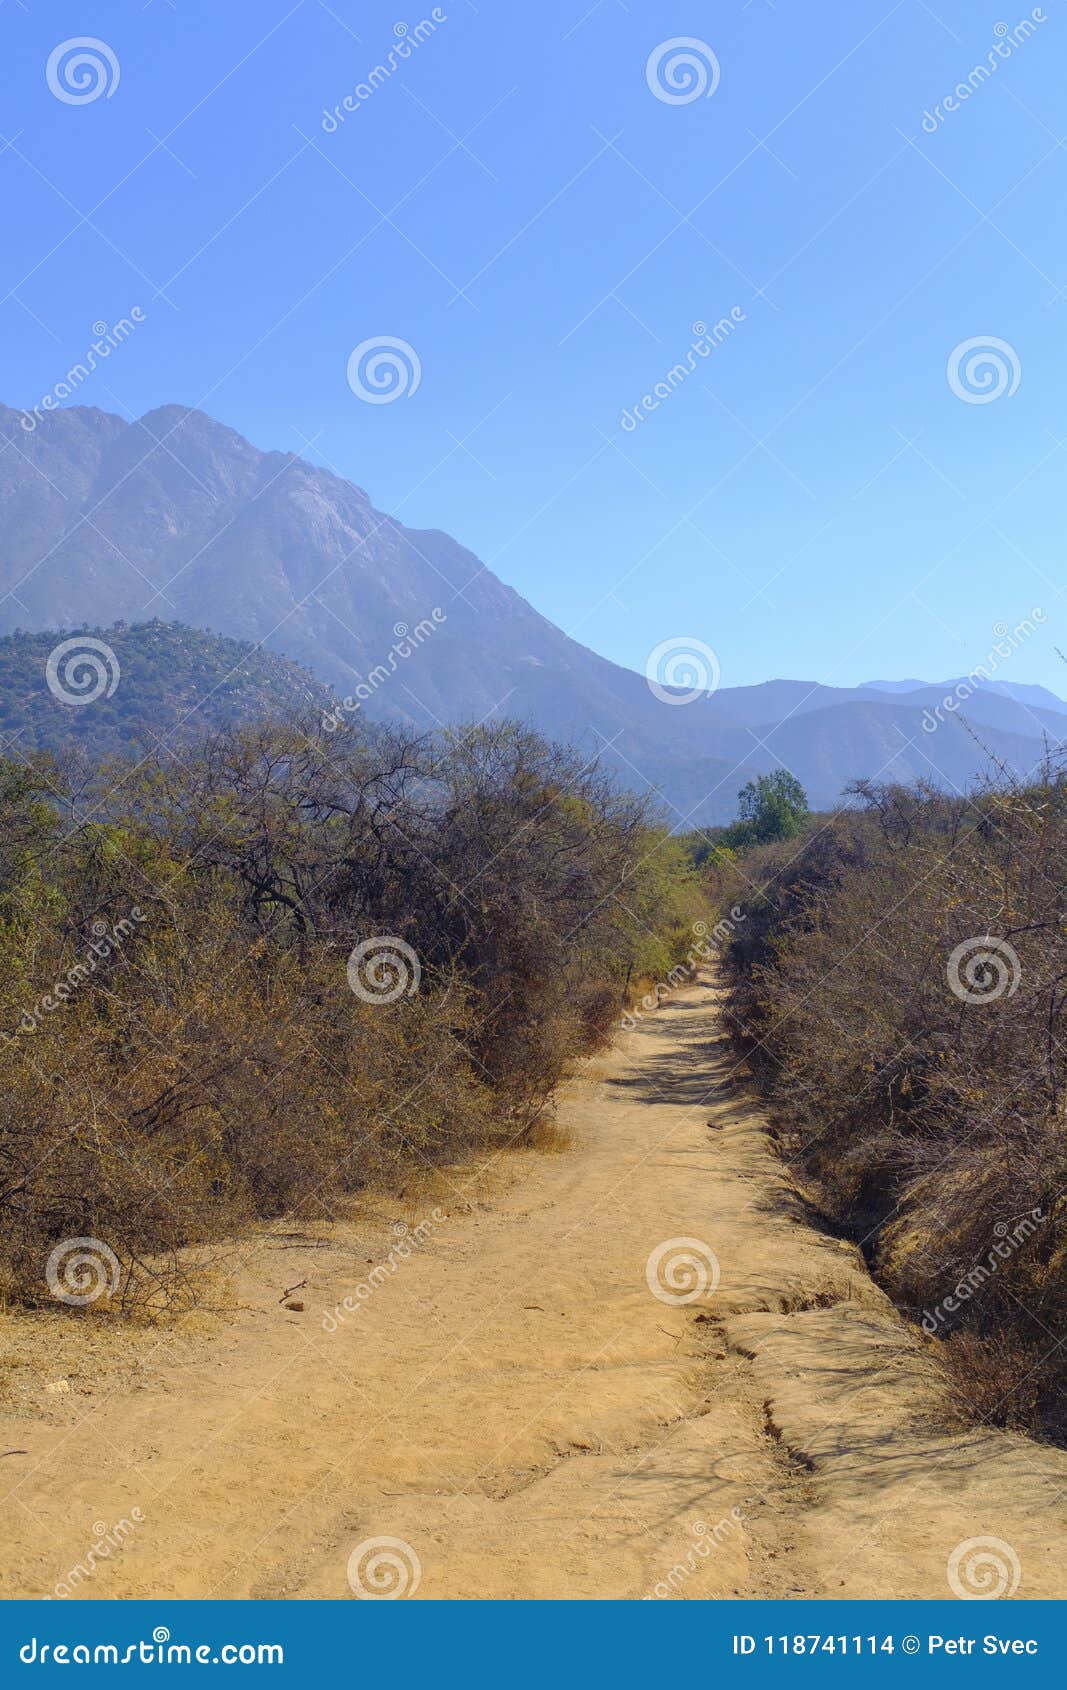 dirt path at la campana national park